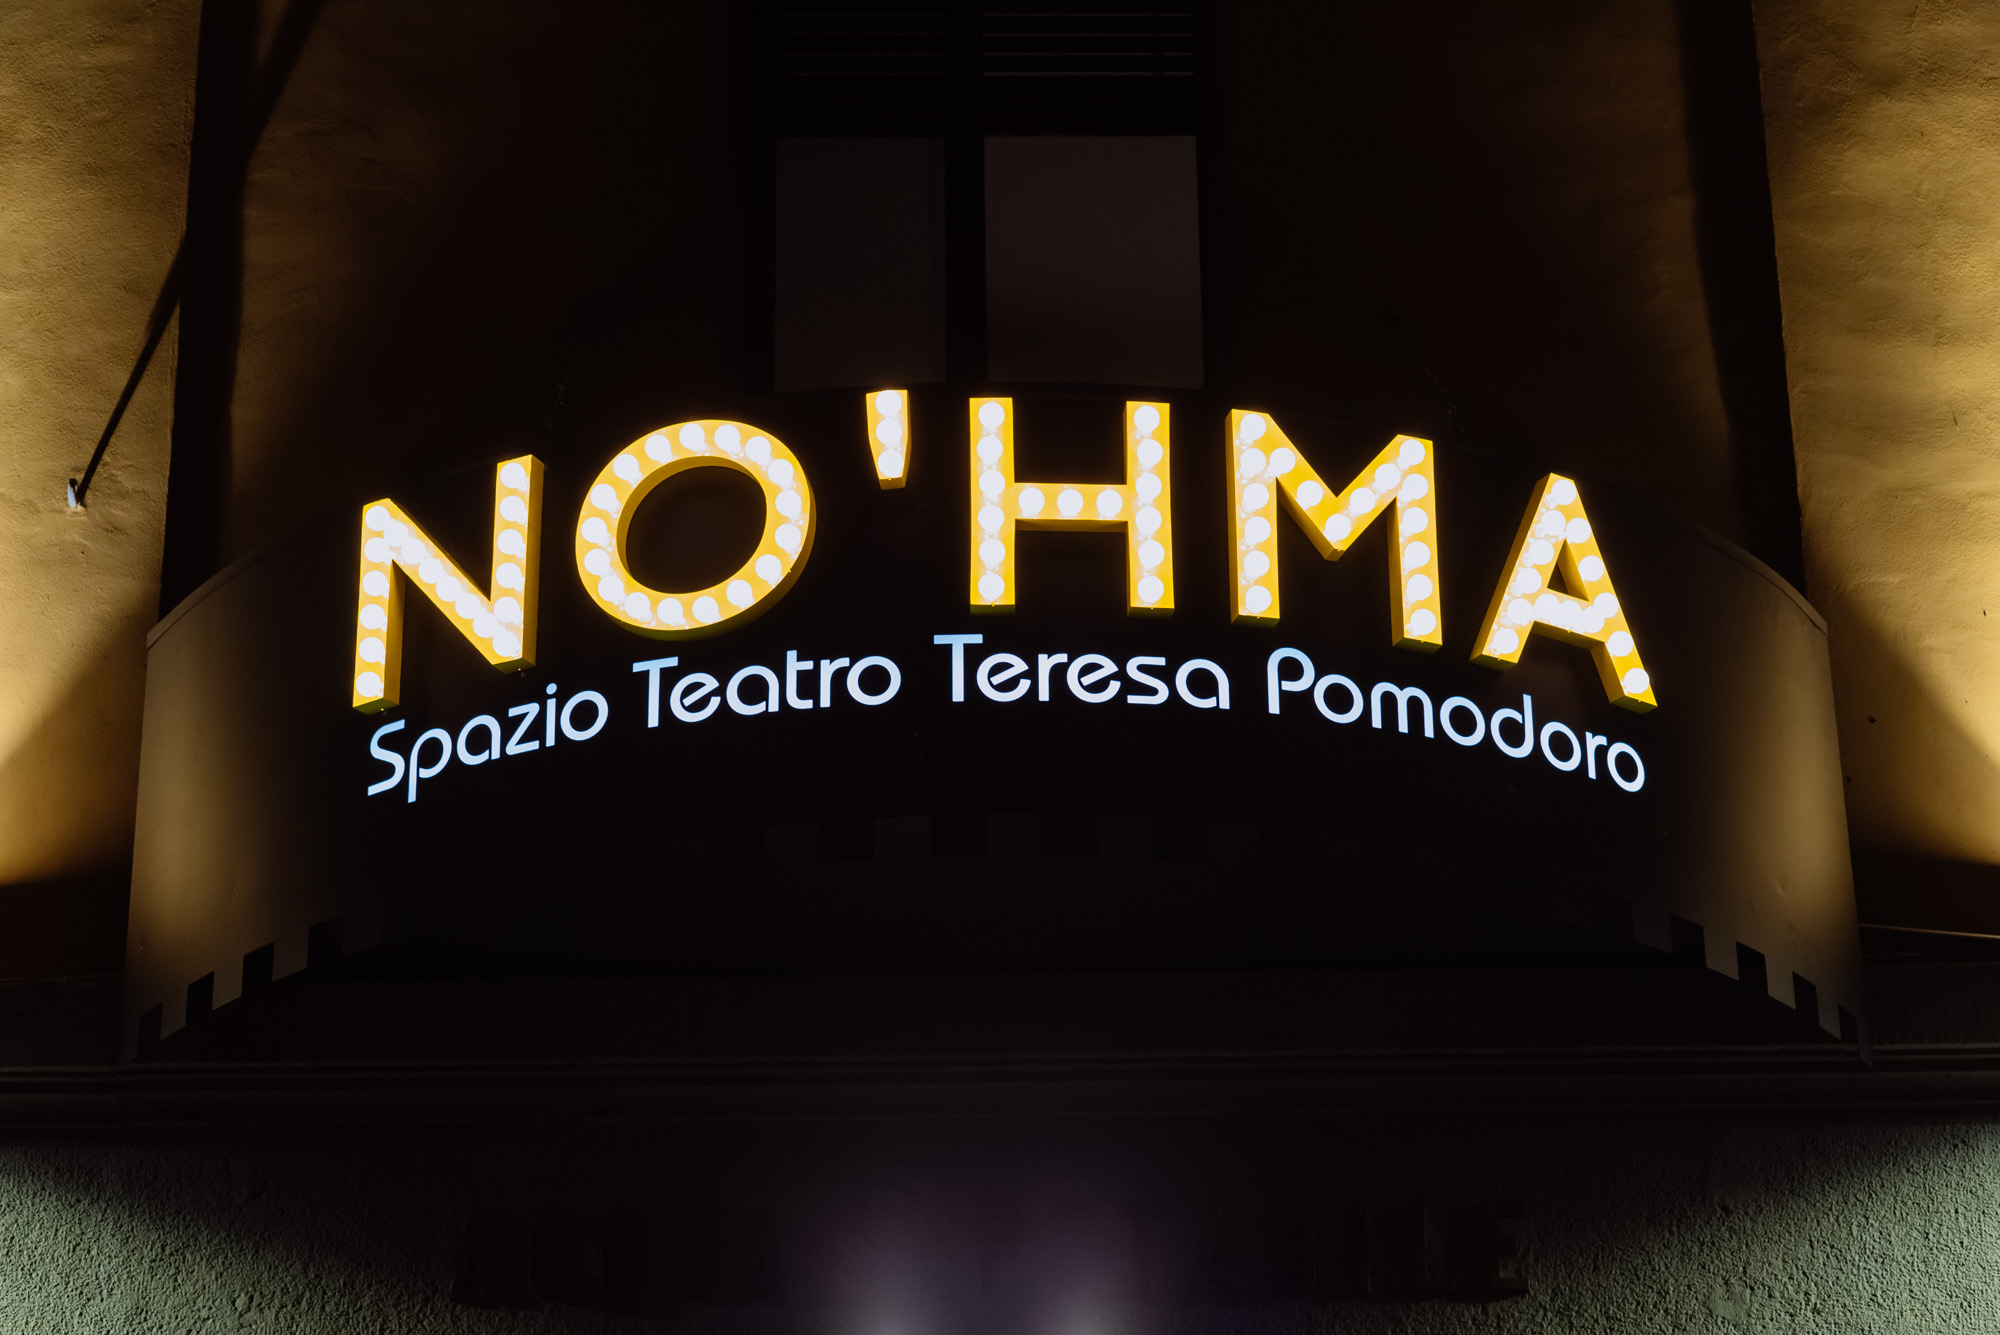 La scritta No'hma Spazio Teatro Teresa Pomodoro campeggia sull'insegna luminosa del teatro milanese.